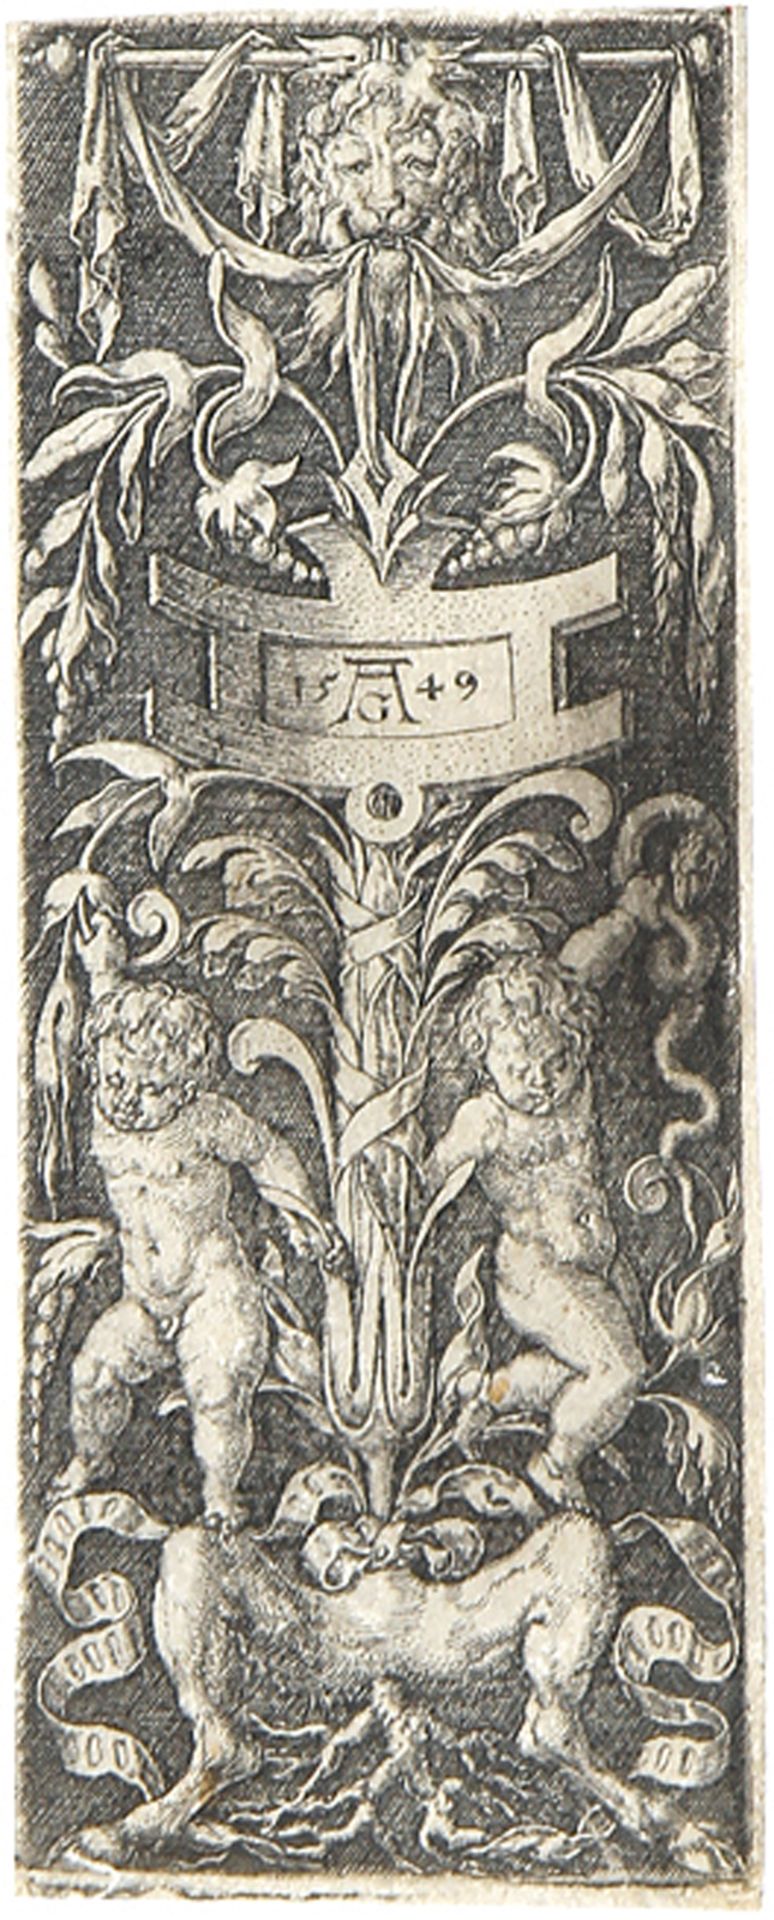 HEINRICH ALDEGREVER:  Ornamenttafel mit zwei nackten, auf Satyrbeinen stehenden Knaben.